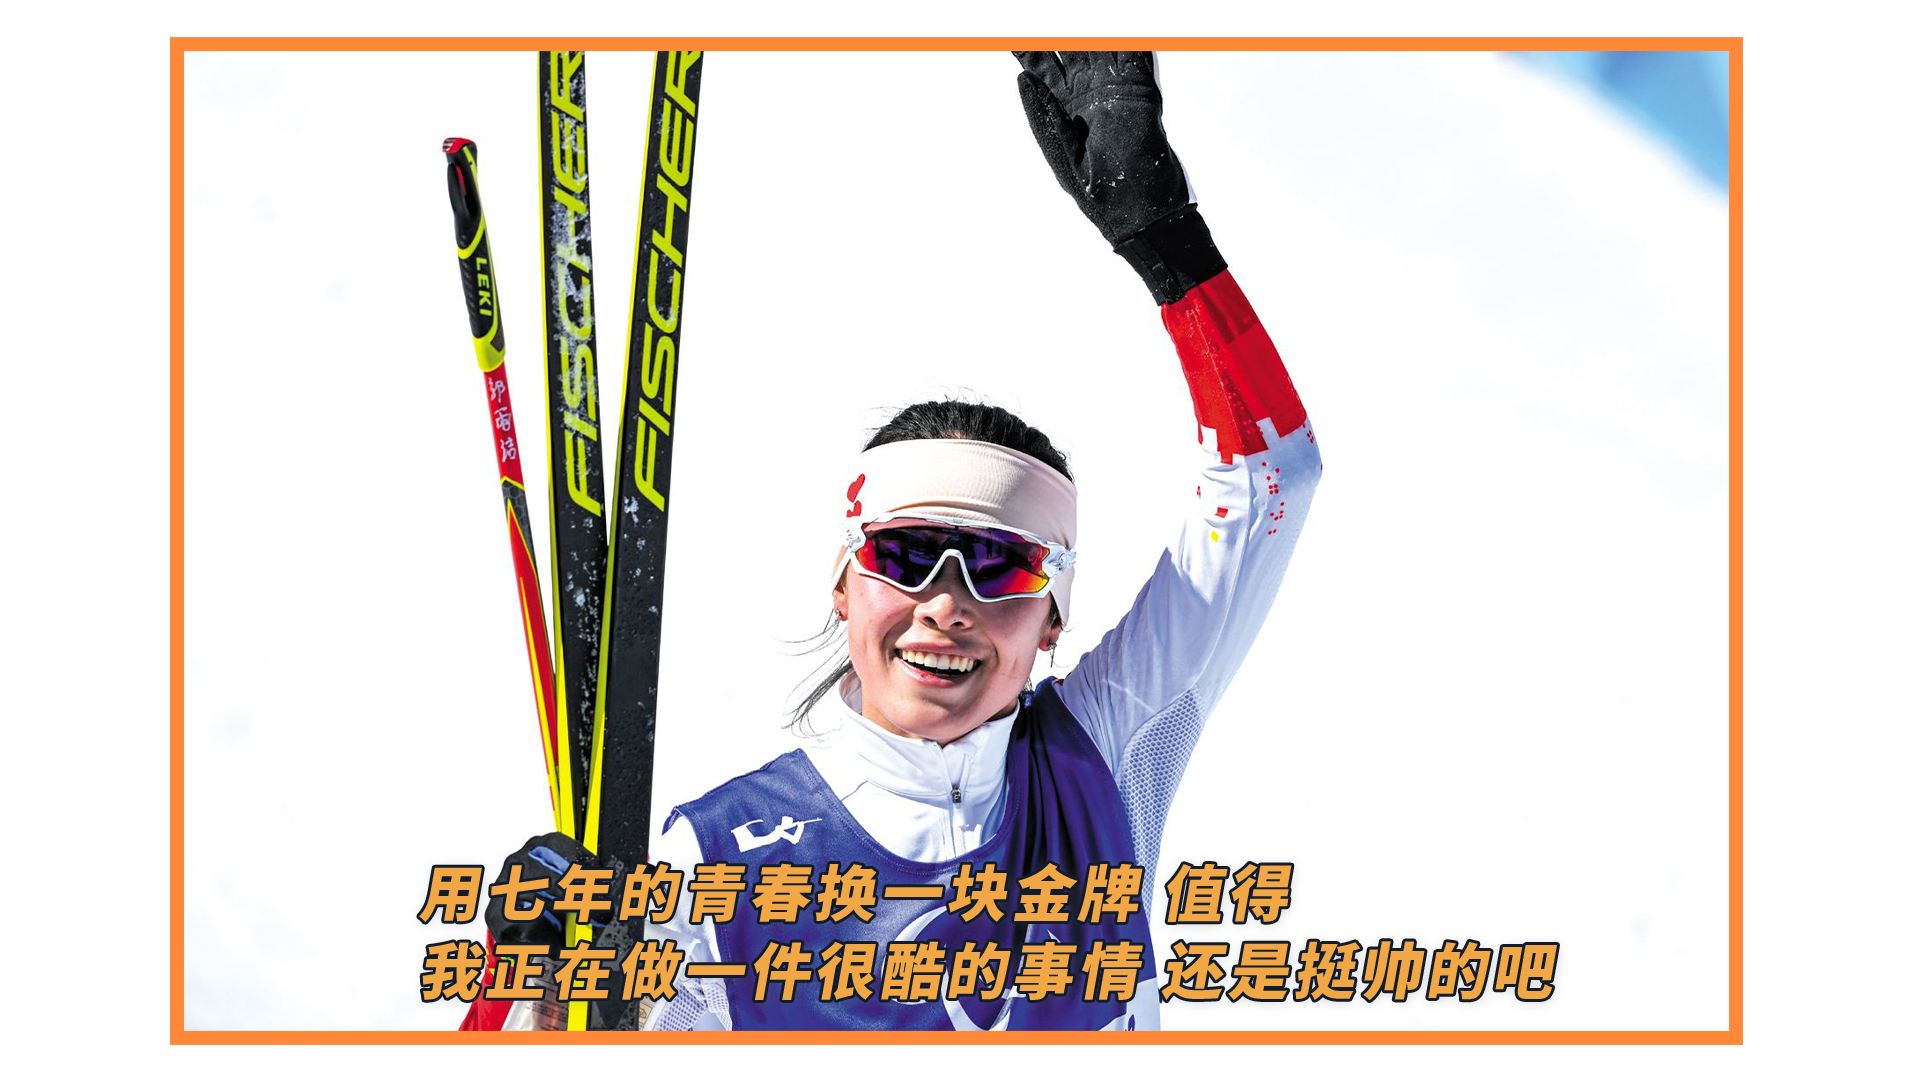 相对论 | 正采访冬残奥冠军郭雨洁，身后突然“闯入”“流泪的金容融”……